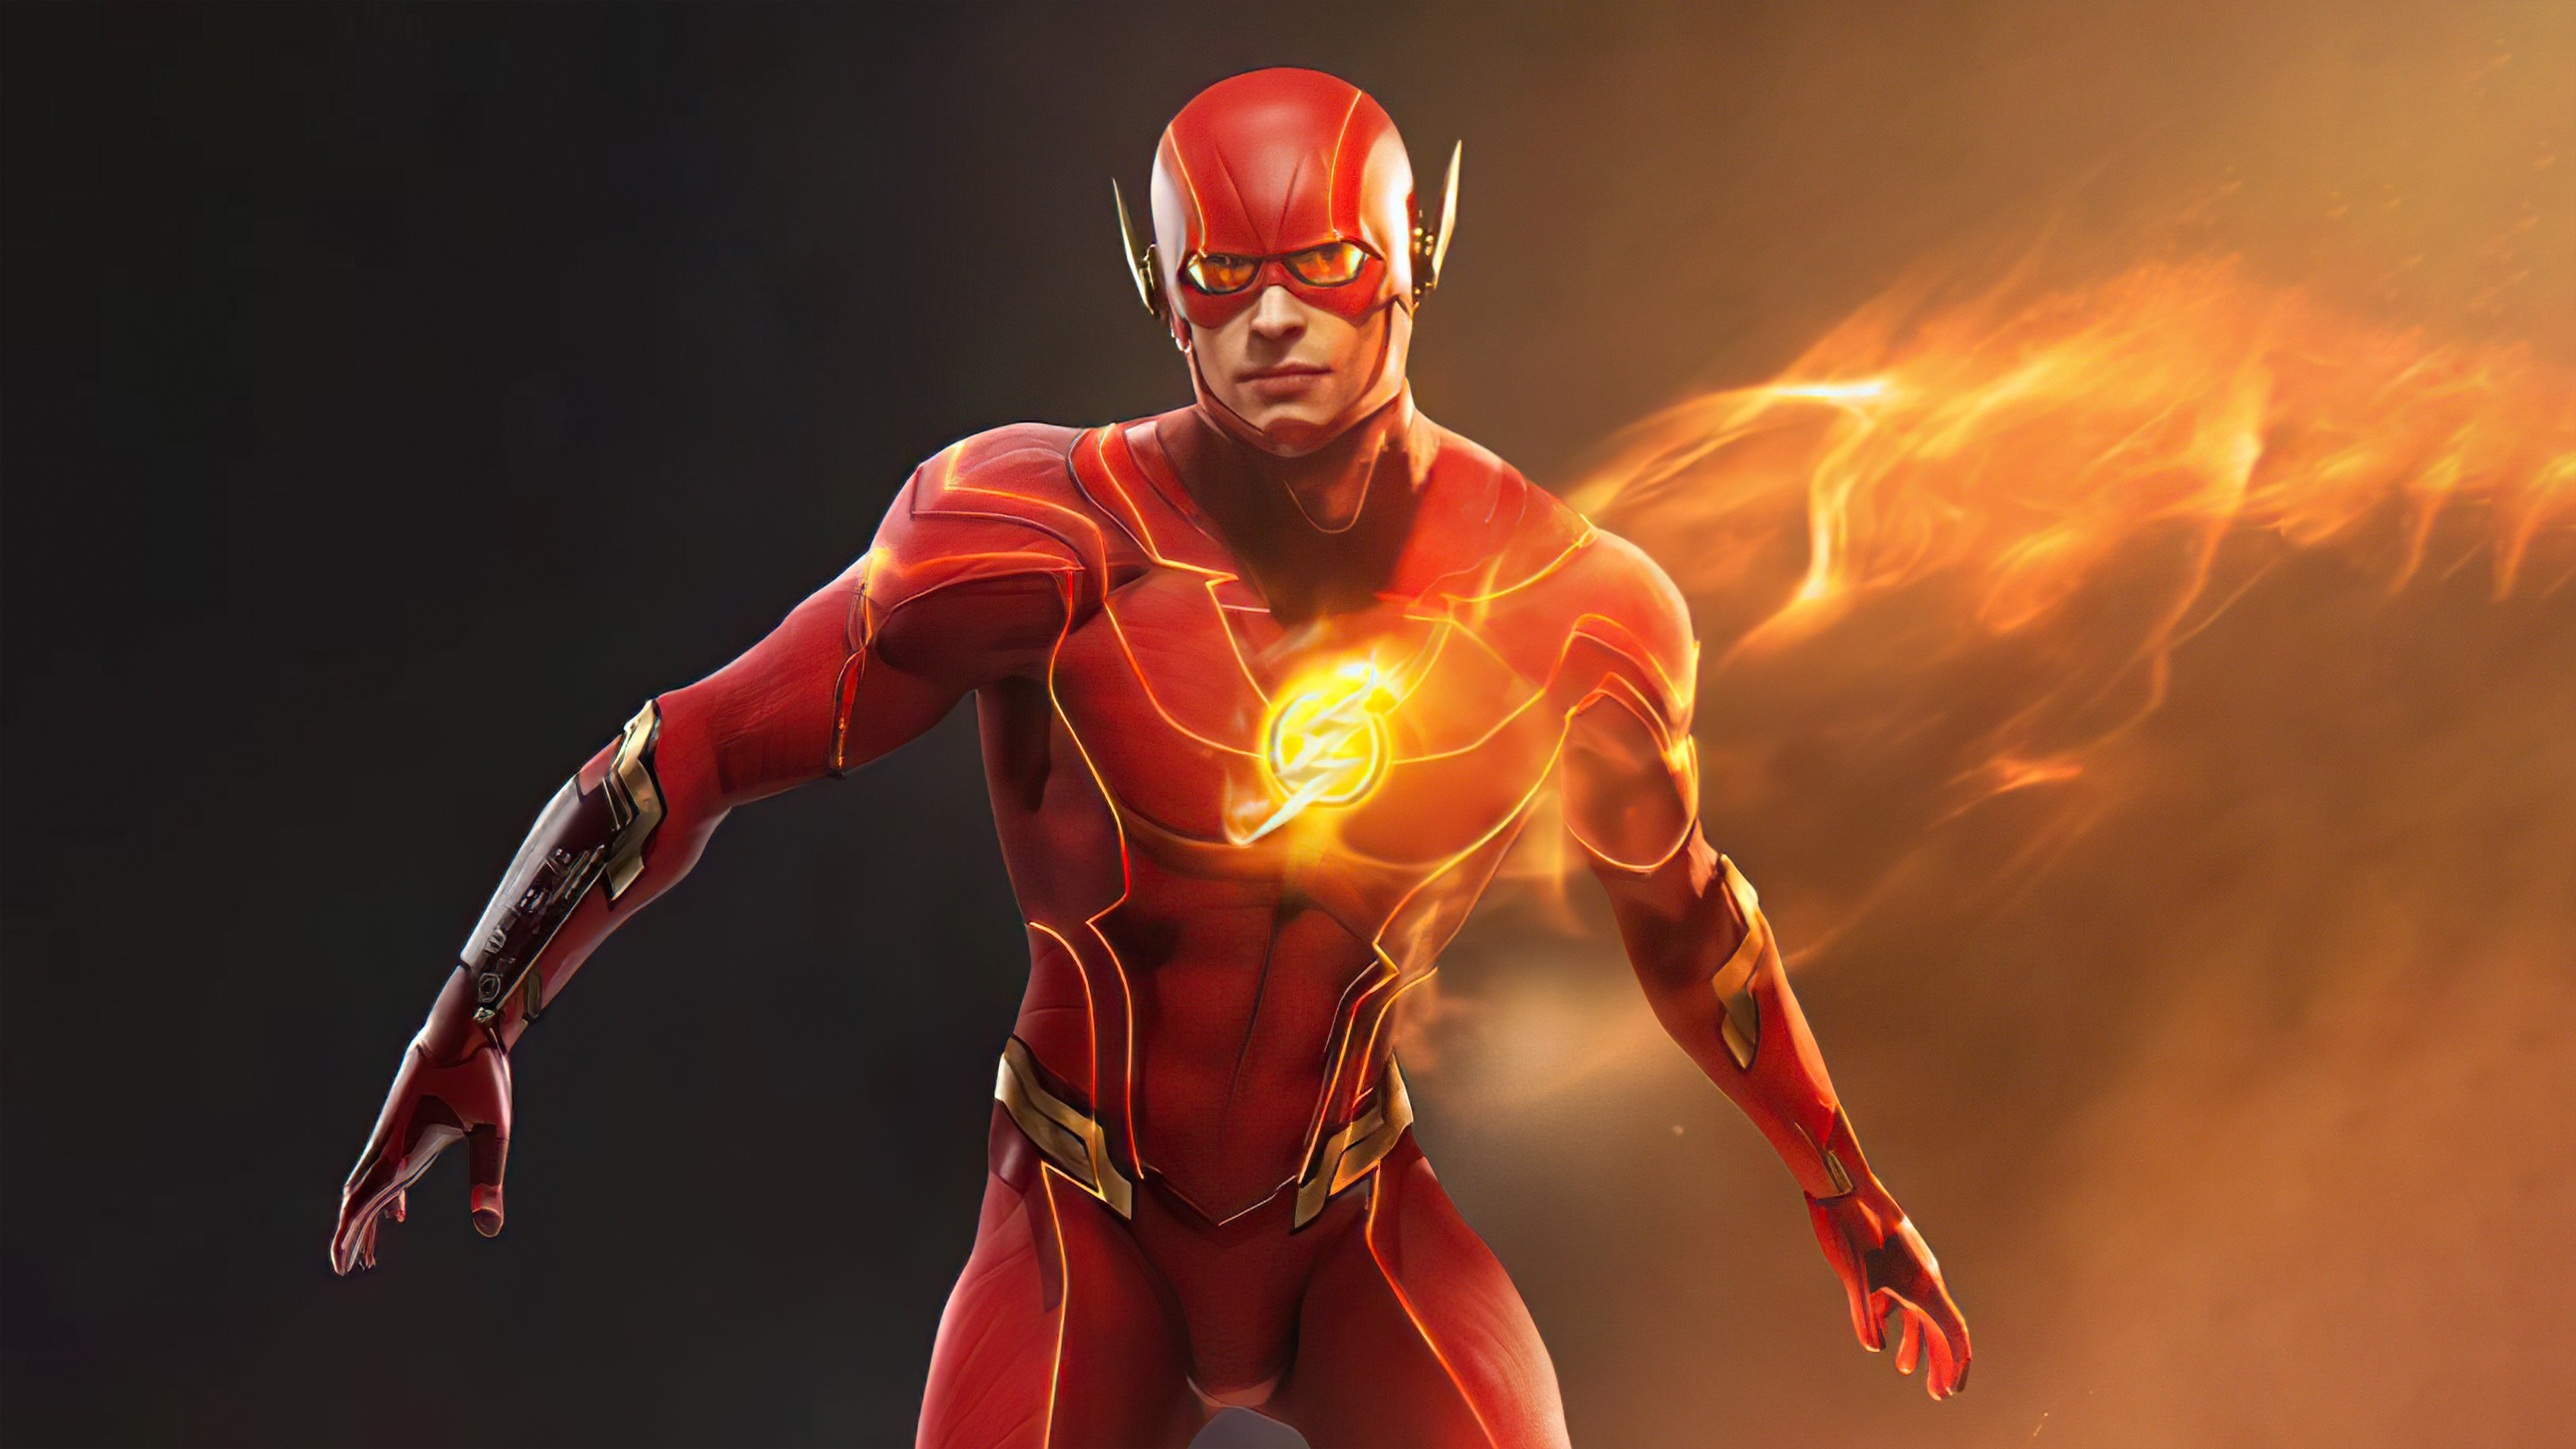 Fondos de pantalla Super heroe The Flash